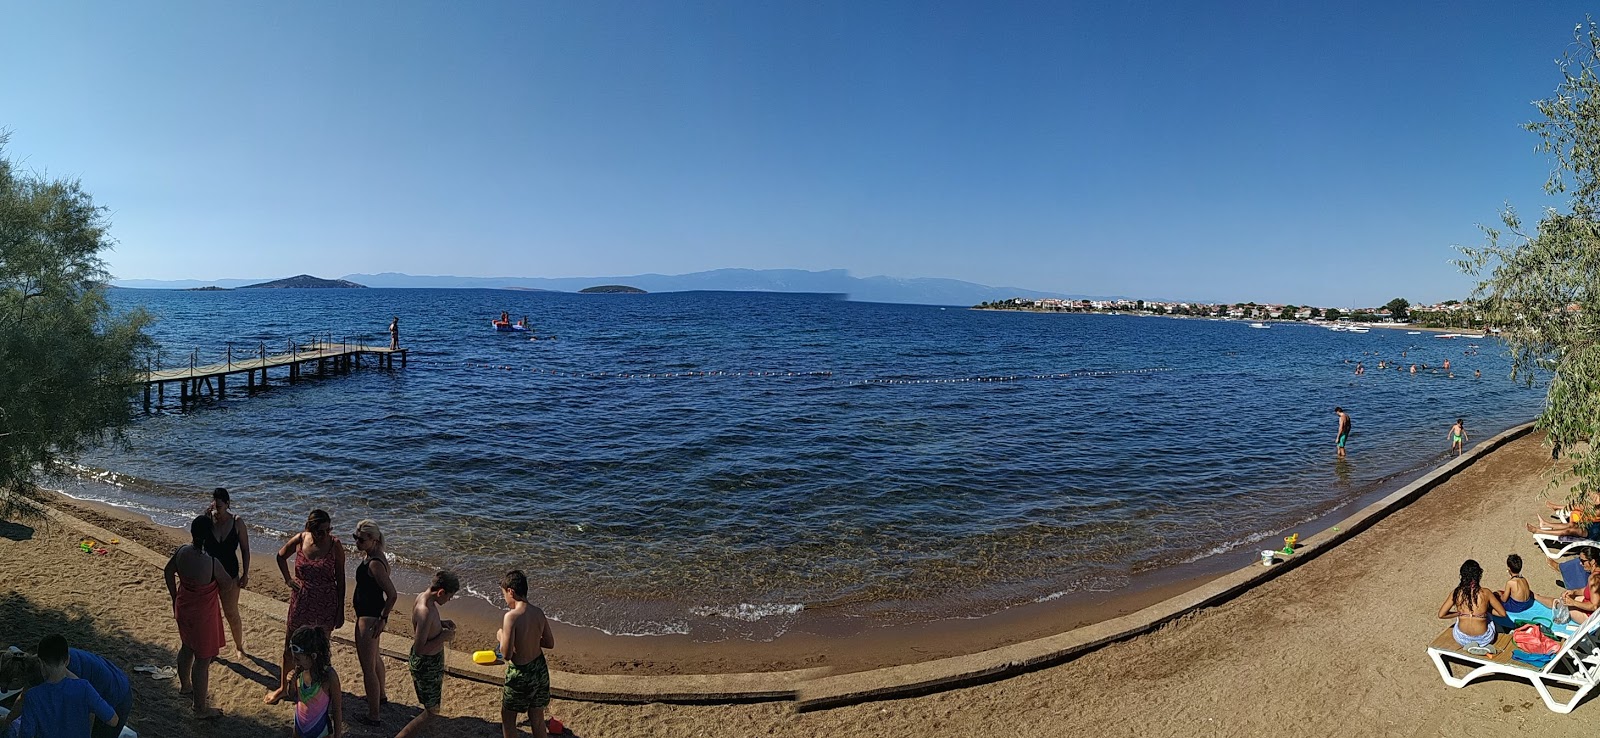 Ayvalik beach II'in fotoğrafı geniş ile birlikte